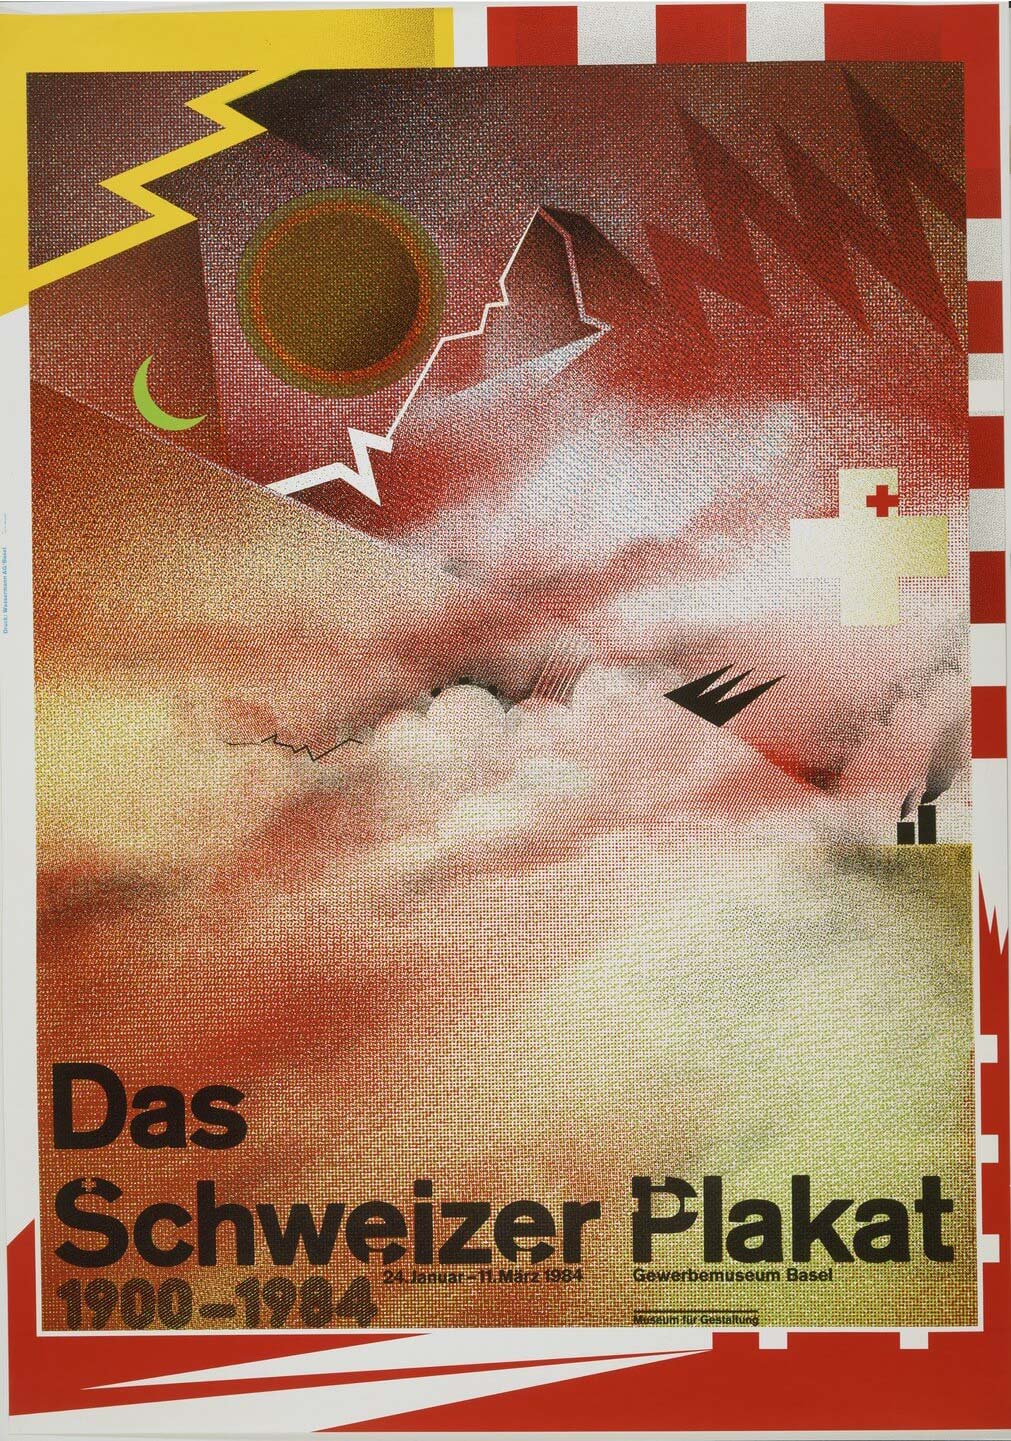 Wolfgang Weingart: Das Schweizer Plakat. 1984. Lithograph. (120 x 84.1 cm)